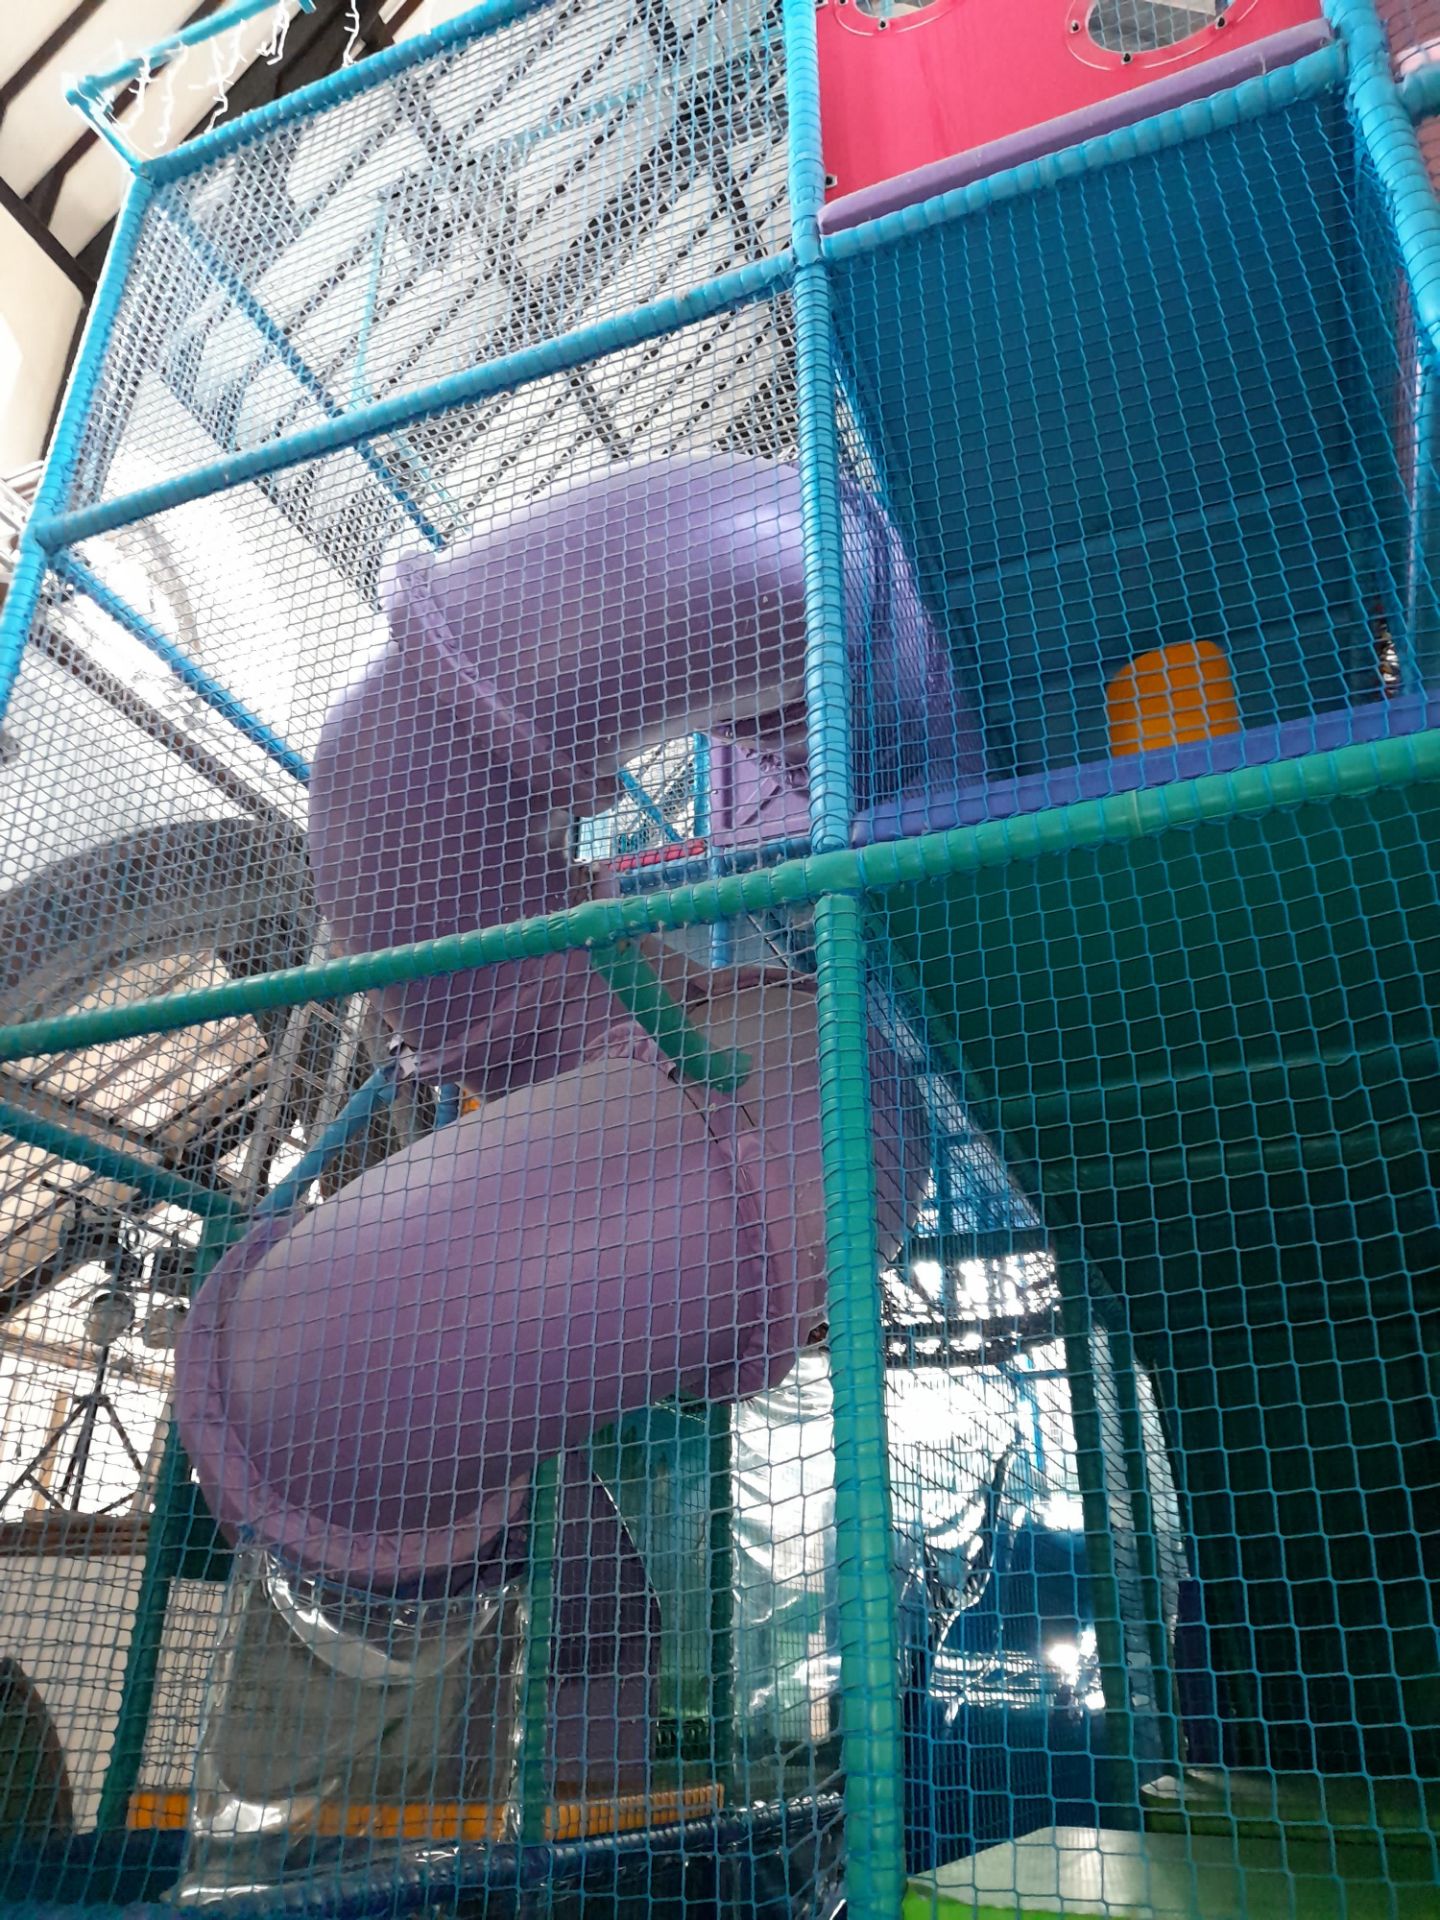 Bespoke 4-Tier Children’s Soft Play Structure, including 2 lane wave slide, spiral slide, deck - Image 3 of 6